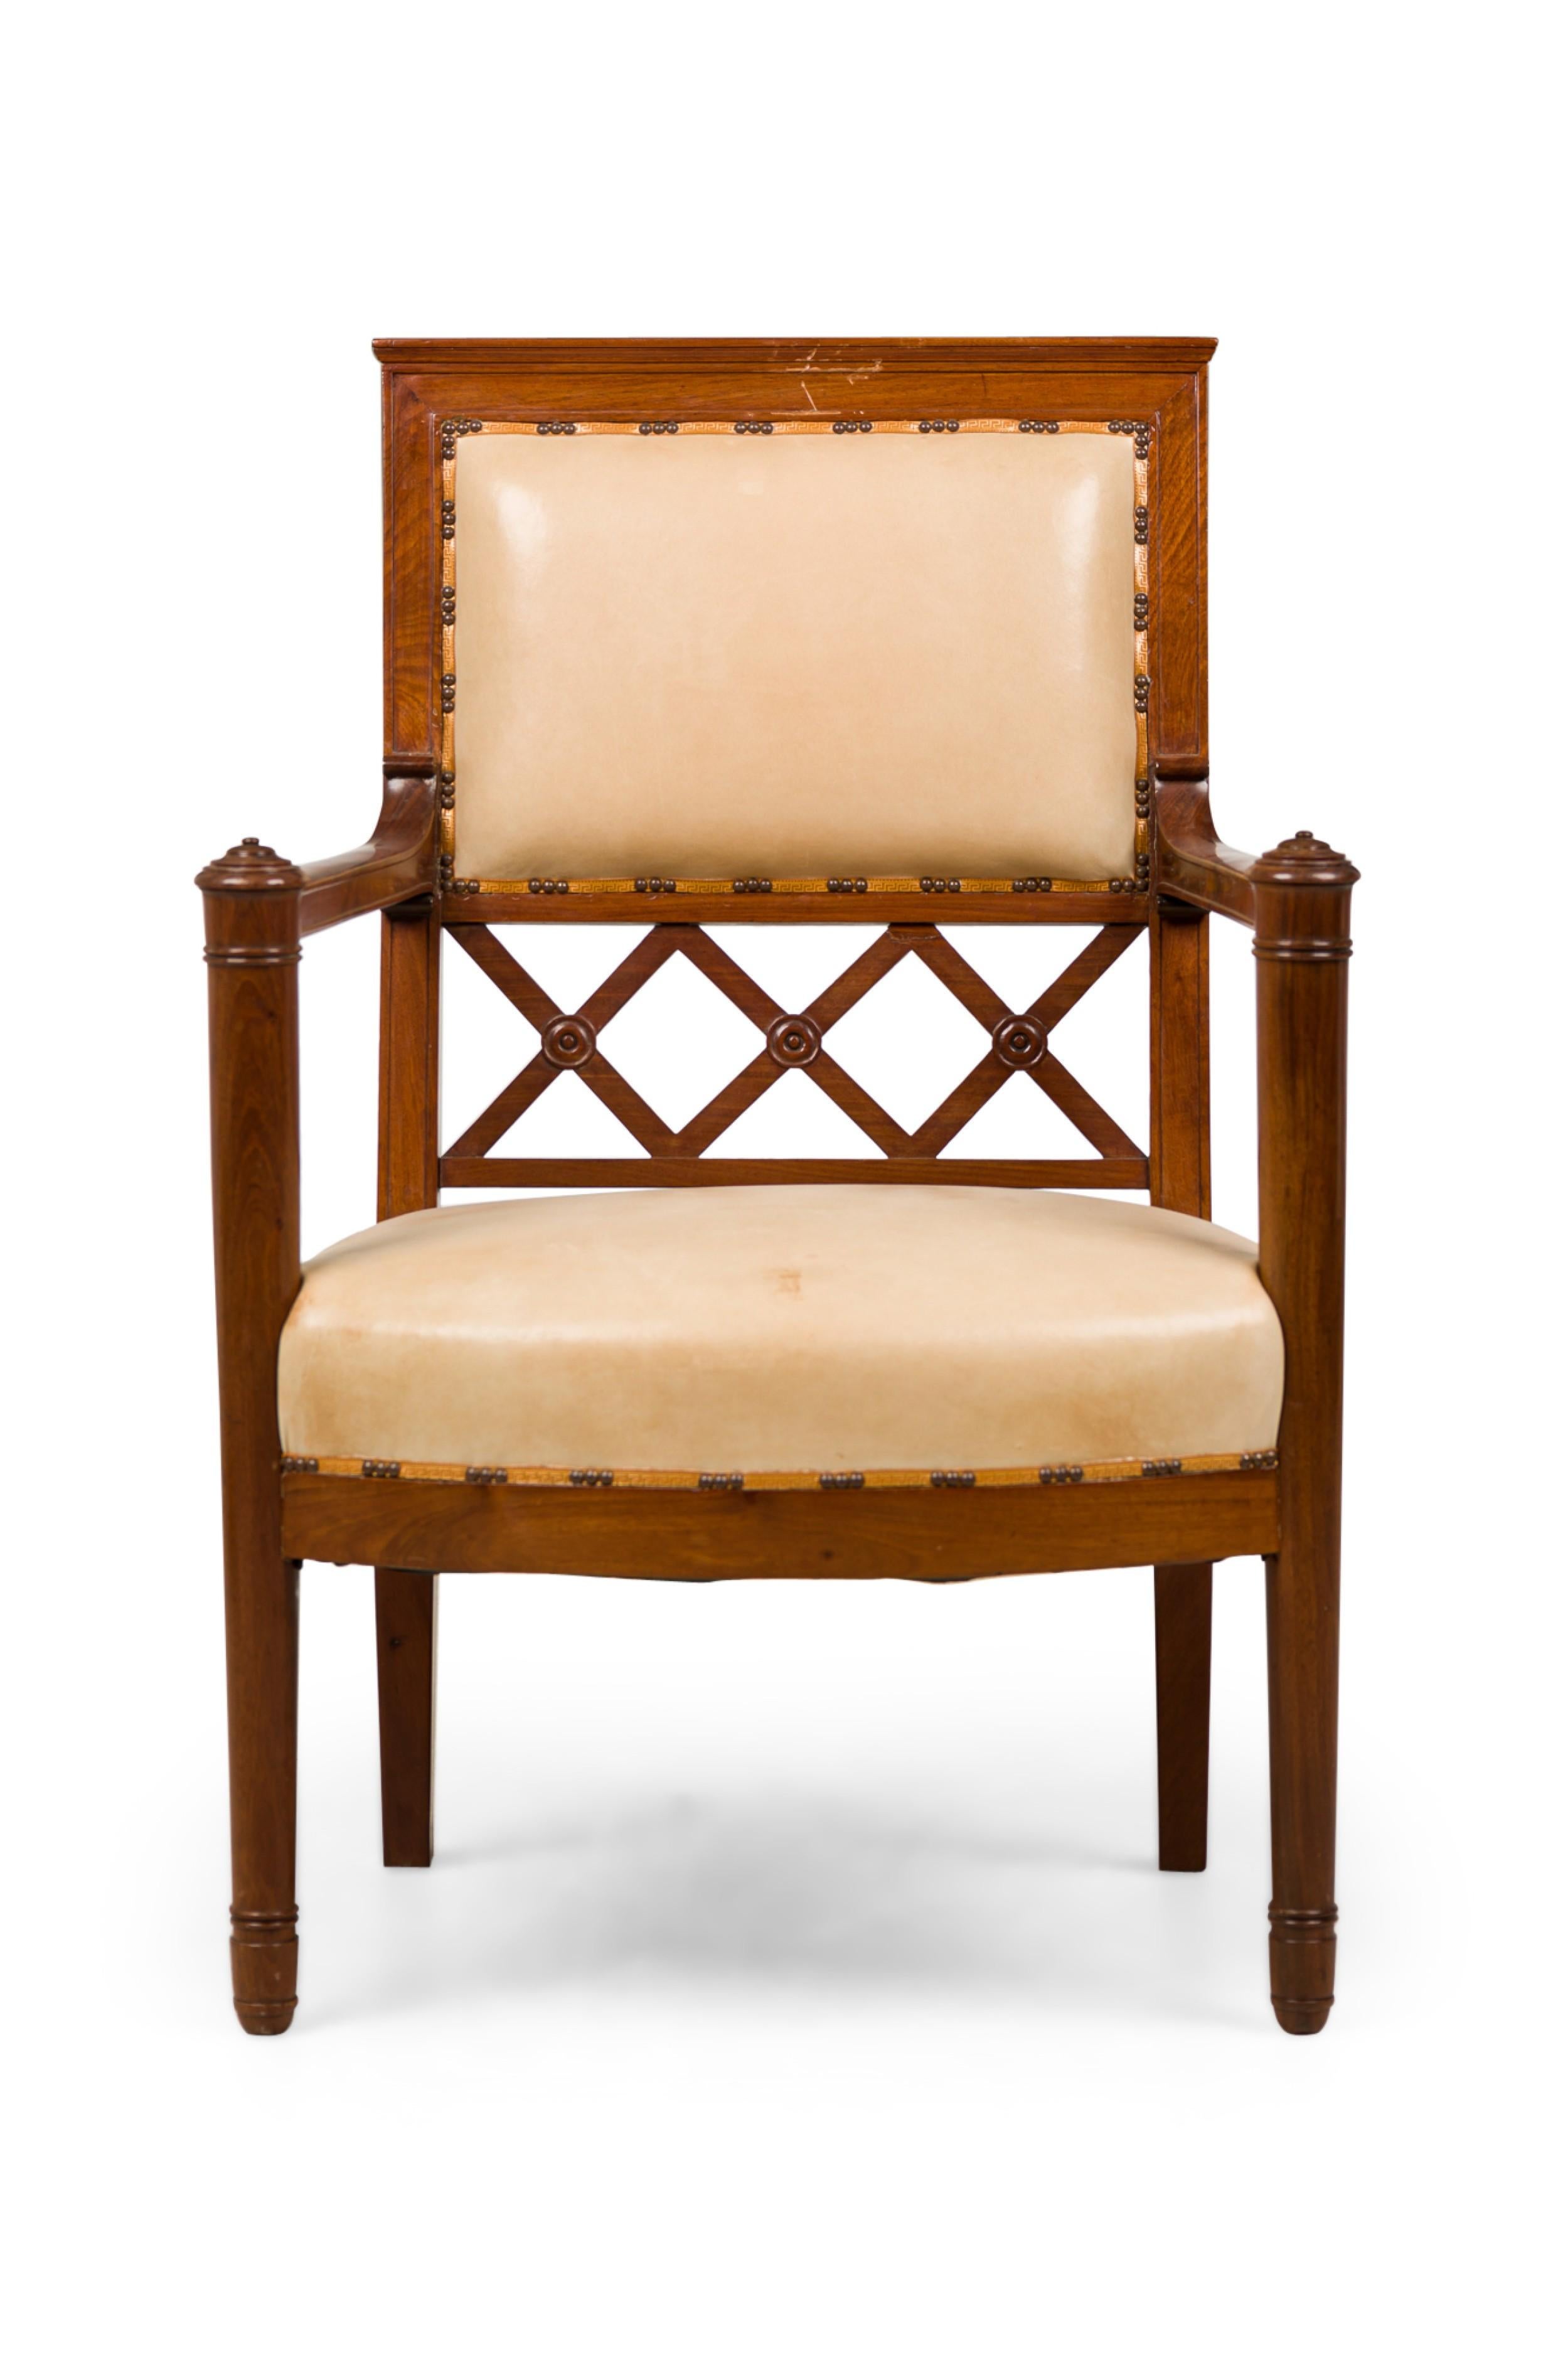 PAAR französischer Consolate-Mahagoni-Stühle (um 1800) mit offenem Arm, beigem Ledersitz und quadratischer Rückenlehne mit offenem X-Design (PREIS PRO PAAR)
